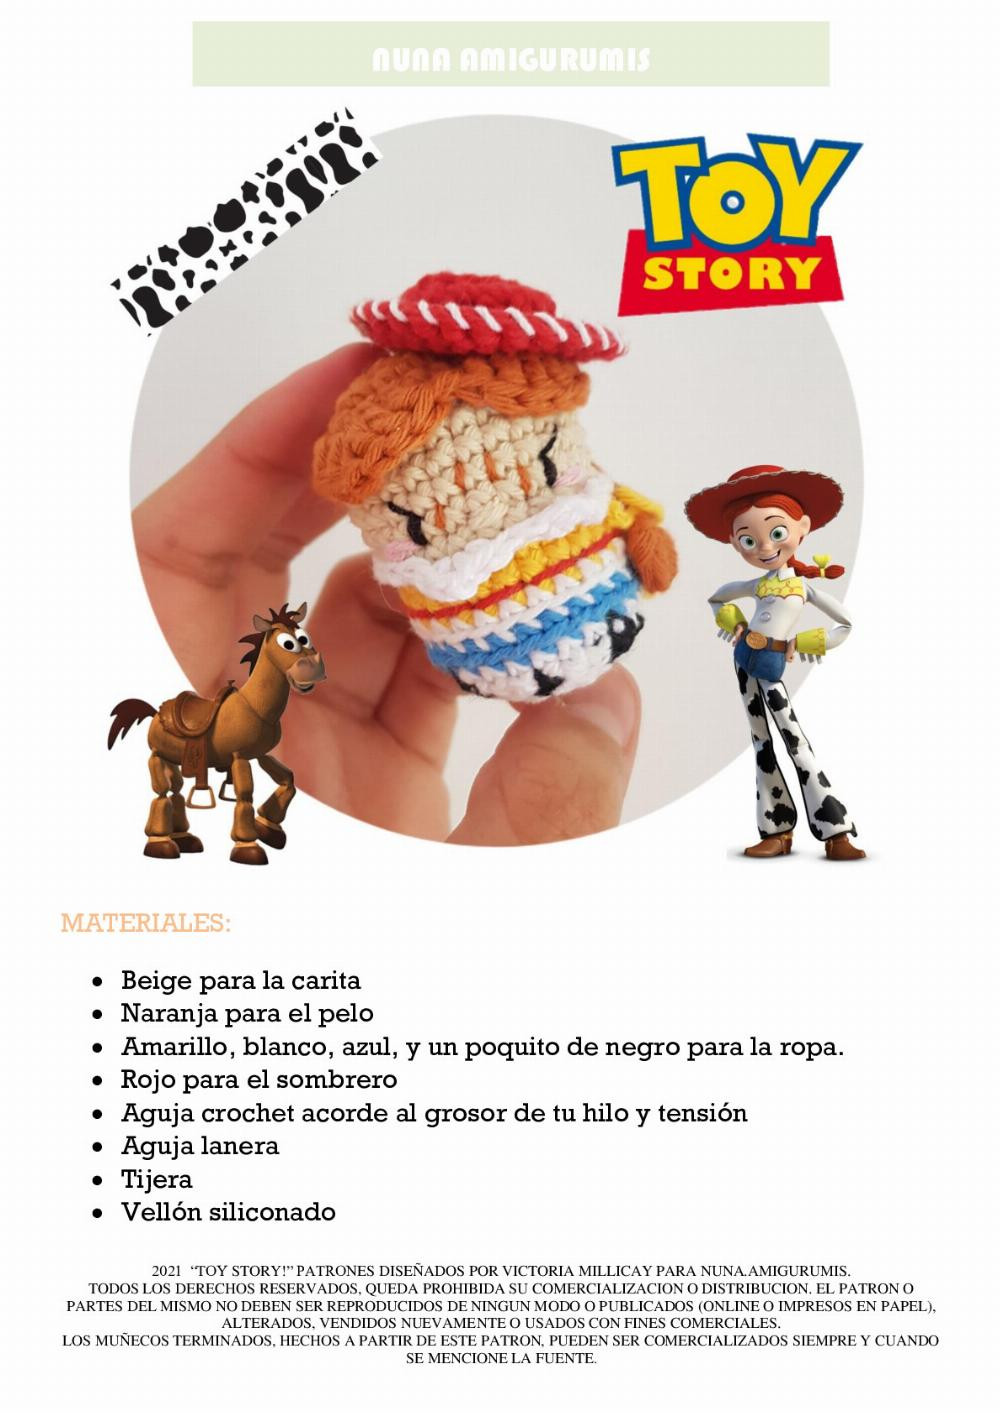 Tutorial de crochet de juguetes de Toy Story para principiantes y avanzados  "gancho", "principiante", "Woody", "Buzz Lightyear" , "Jessie".